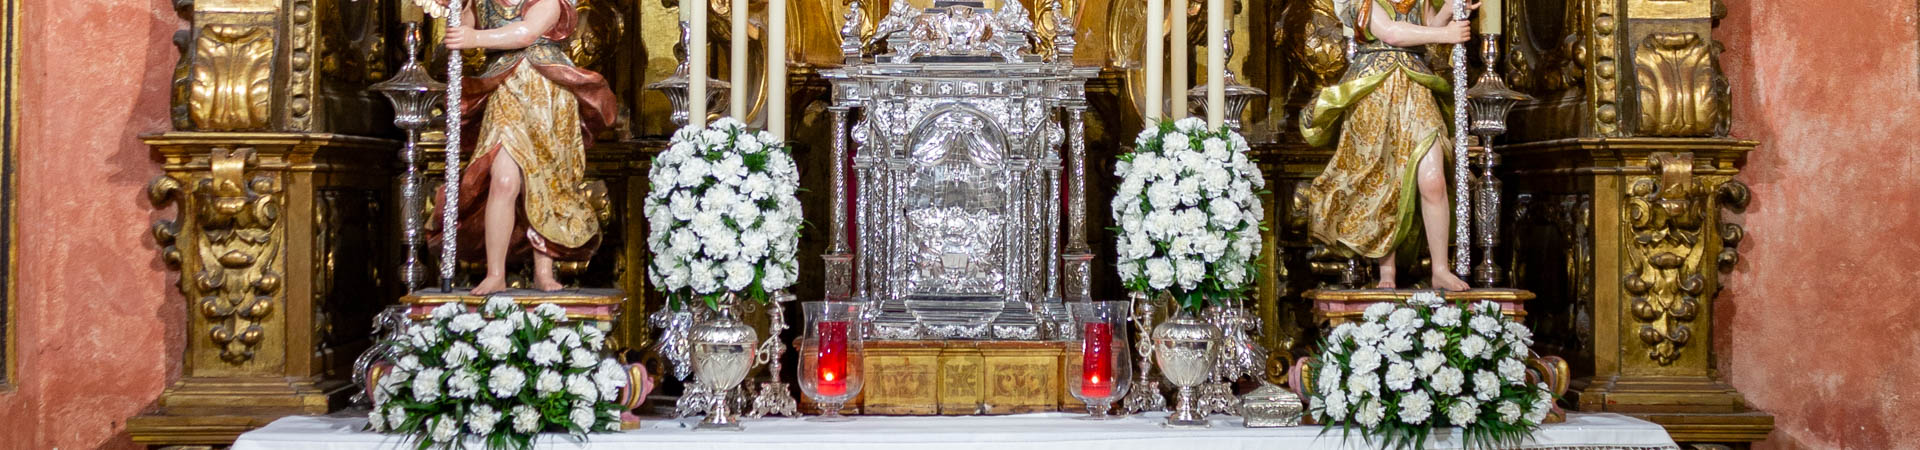 Altar Capilla Sacramental cabecera